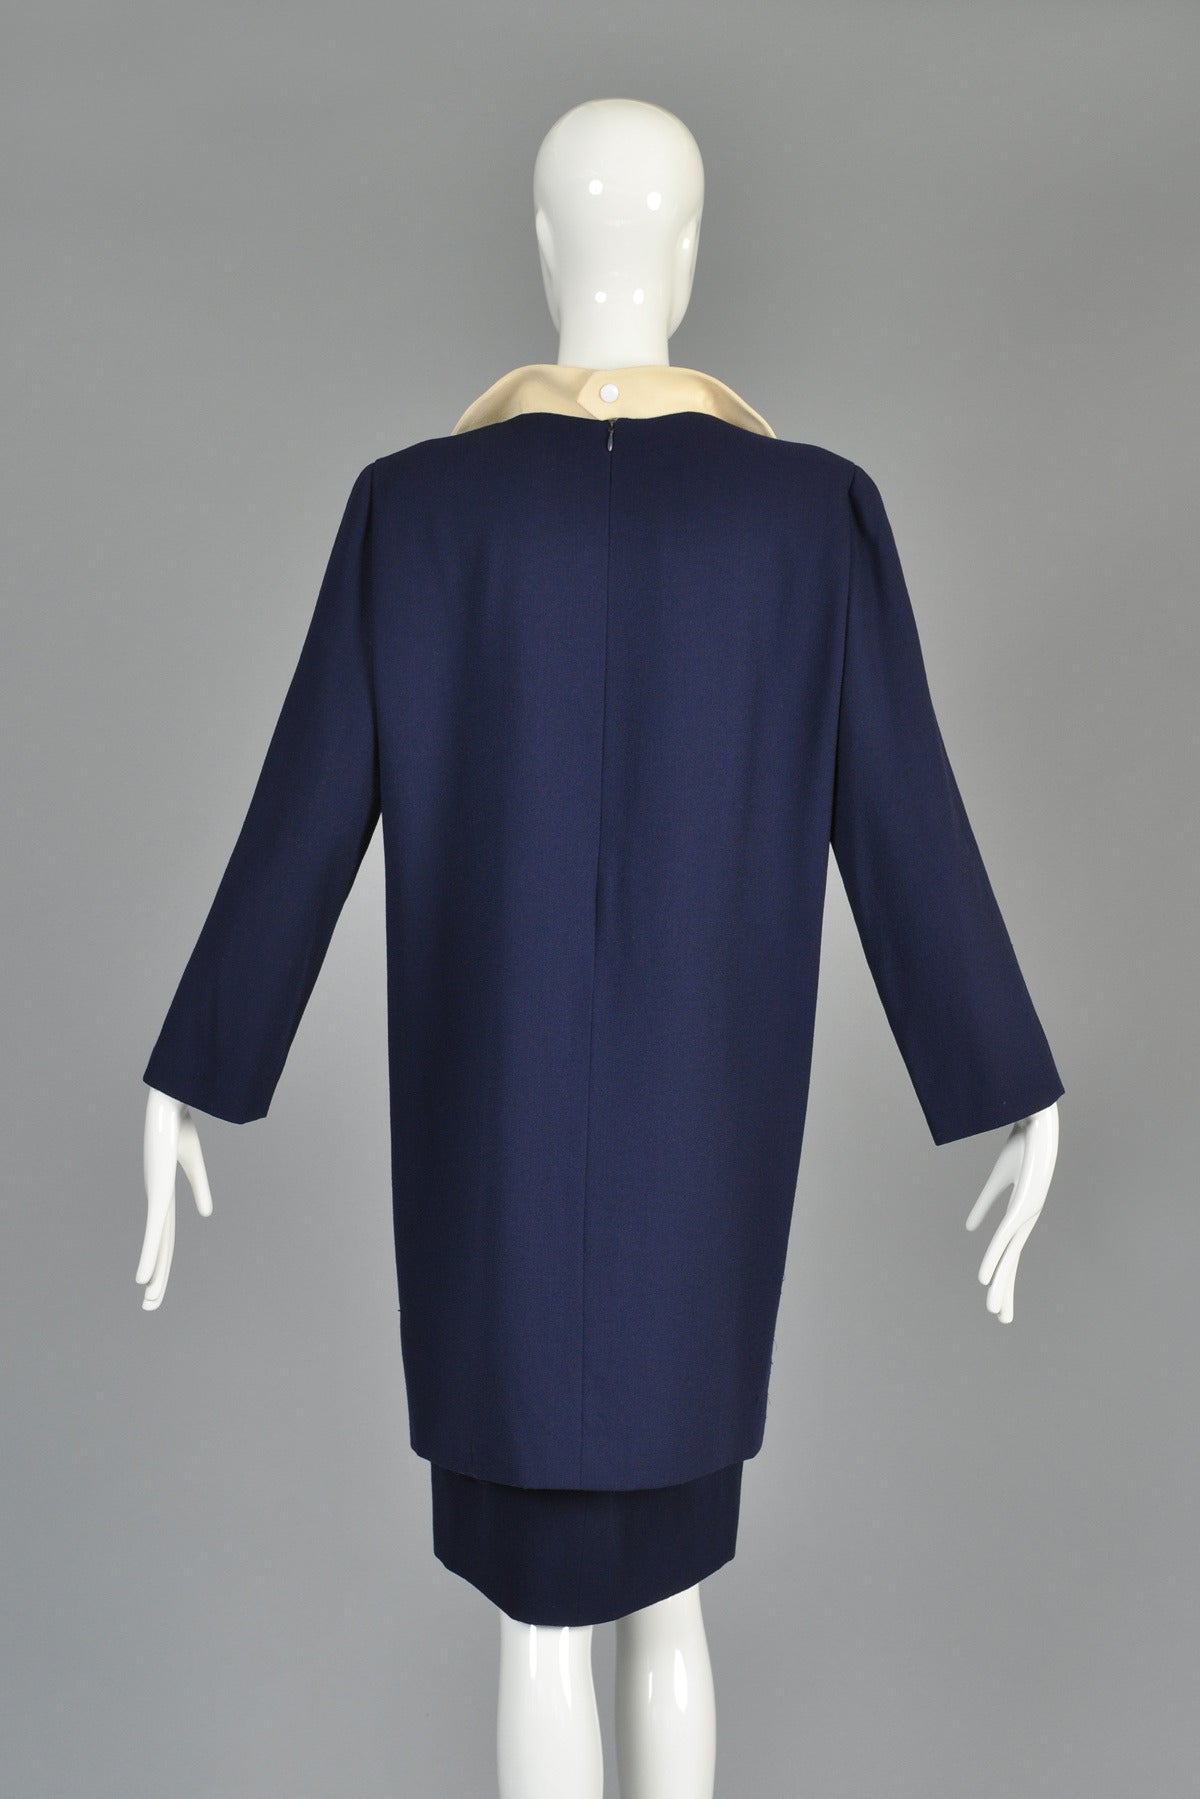 c. 1992 Pierre Cardin Haute Couture Skirt plus Tunic Shift Dress For Sale 4